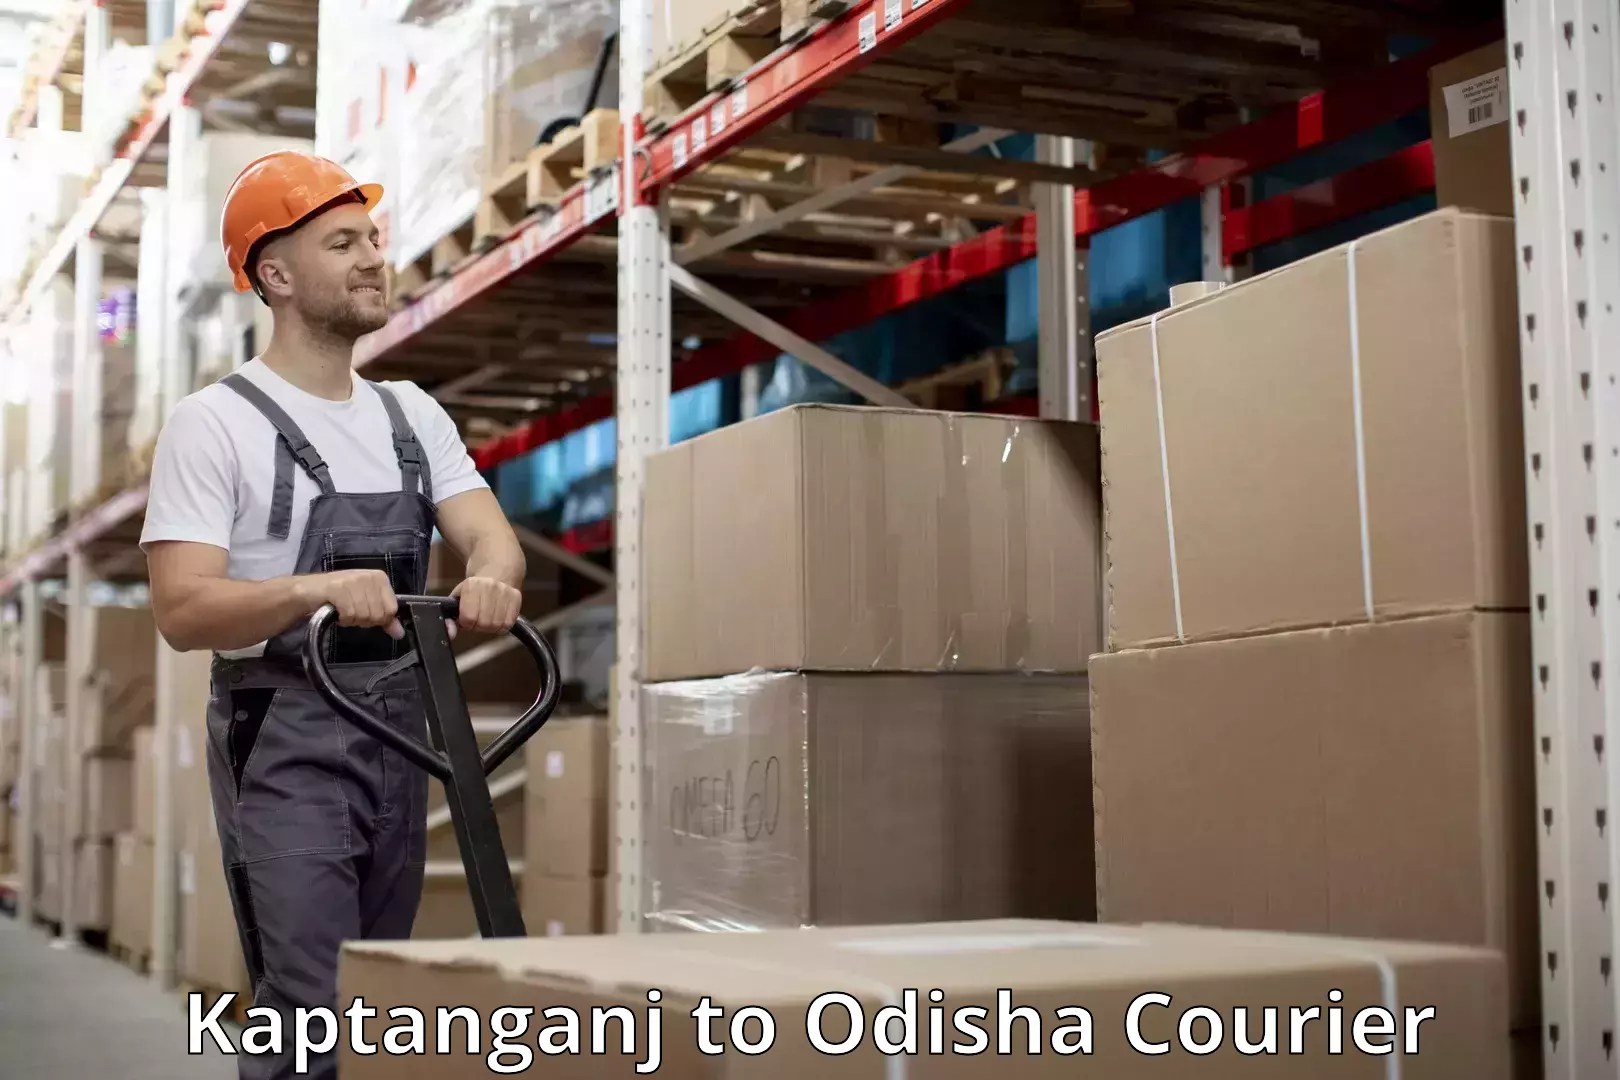 Luggage delivery system Kaptanganj to Odisha